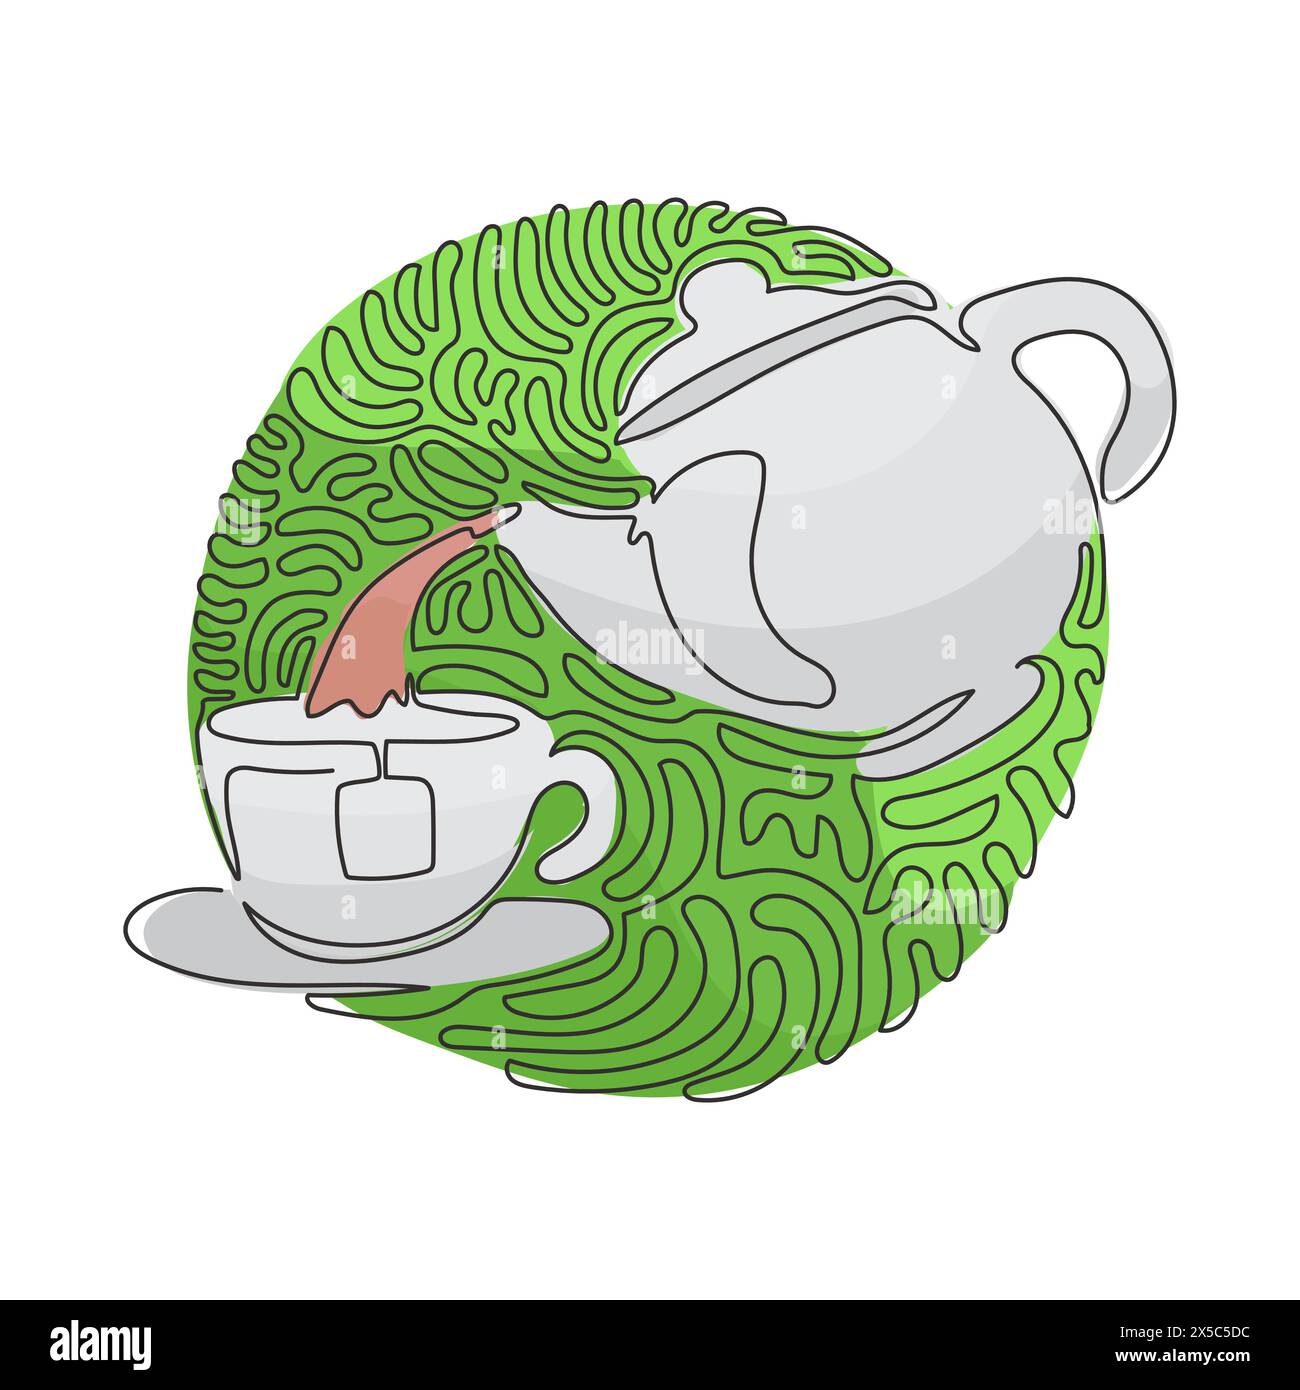 Eine durchgehende, einzeilige Teekanne zum Trinken von Tee gießt heißes Wasser in eine Tasse. Frühstücksutensilien. Schwarz-weiß. Hintergrundstil mit kreisenden Wellen. Stock Vektor